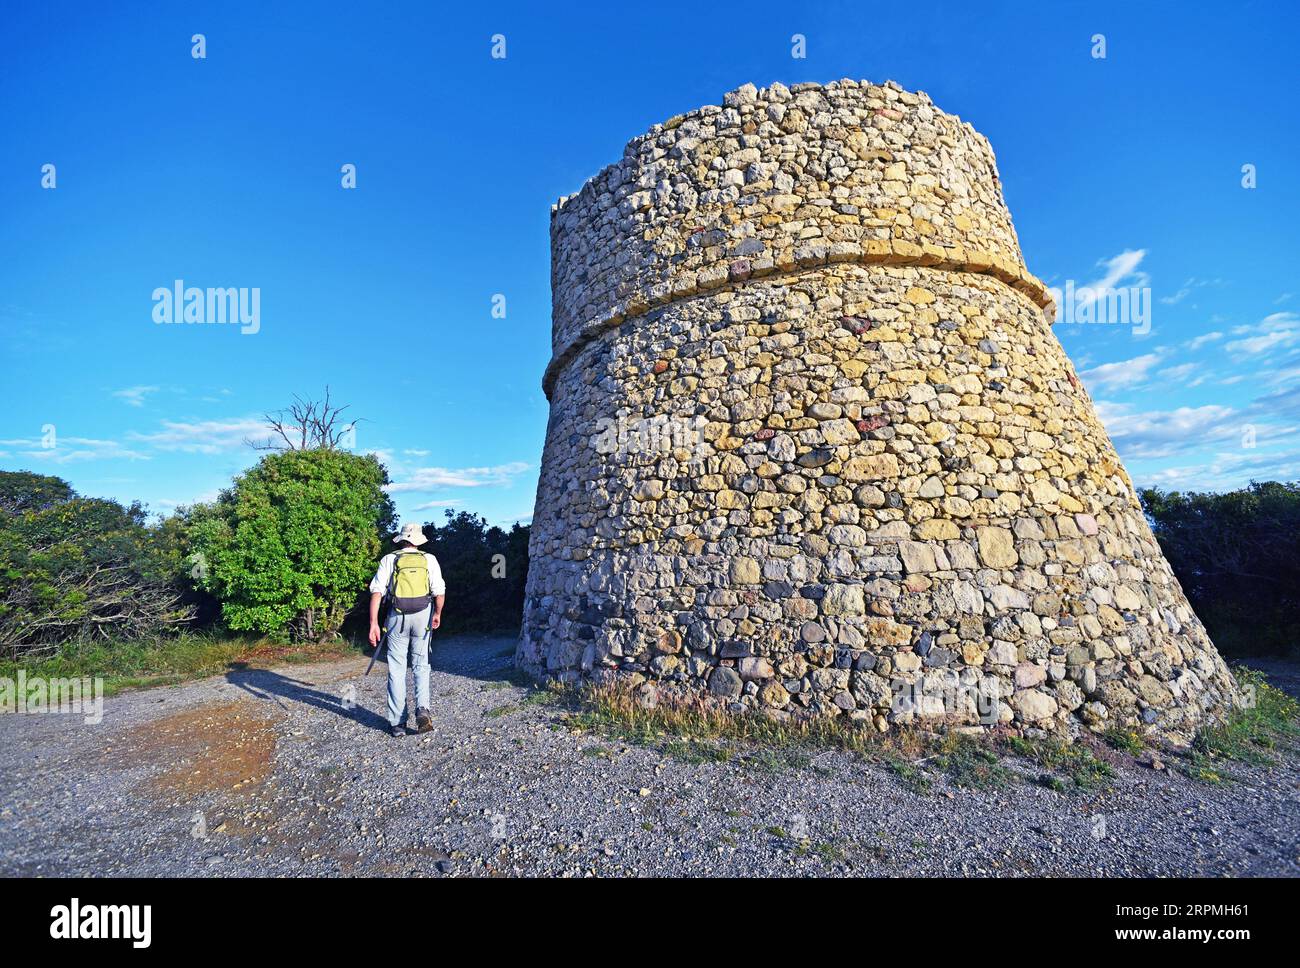 wanderer à la tour genovese de Diane, France, Corse Banque D'Images